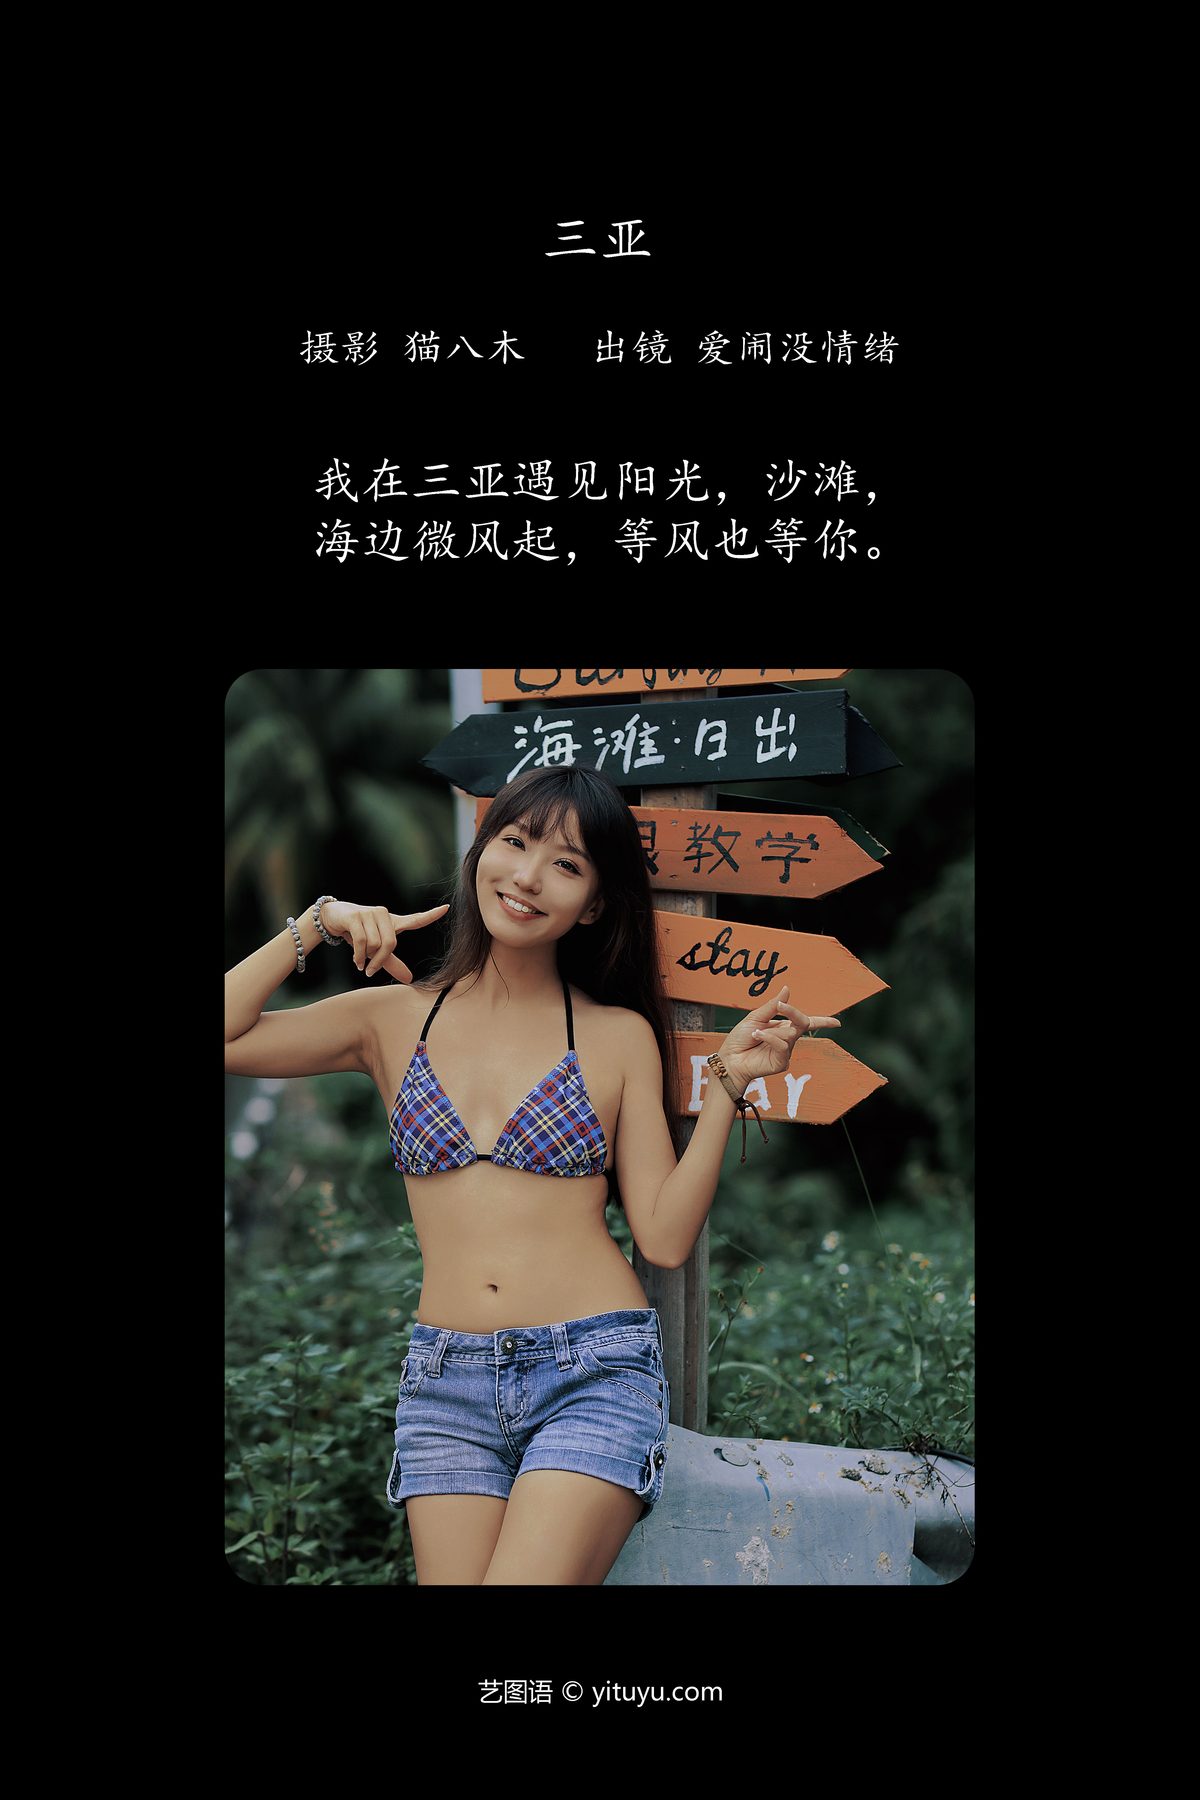 YiTuYu艺图语 Vol 6067 Ai Nao Mei Qing Xu 0002 2802182331.jpg